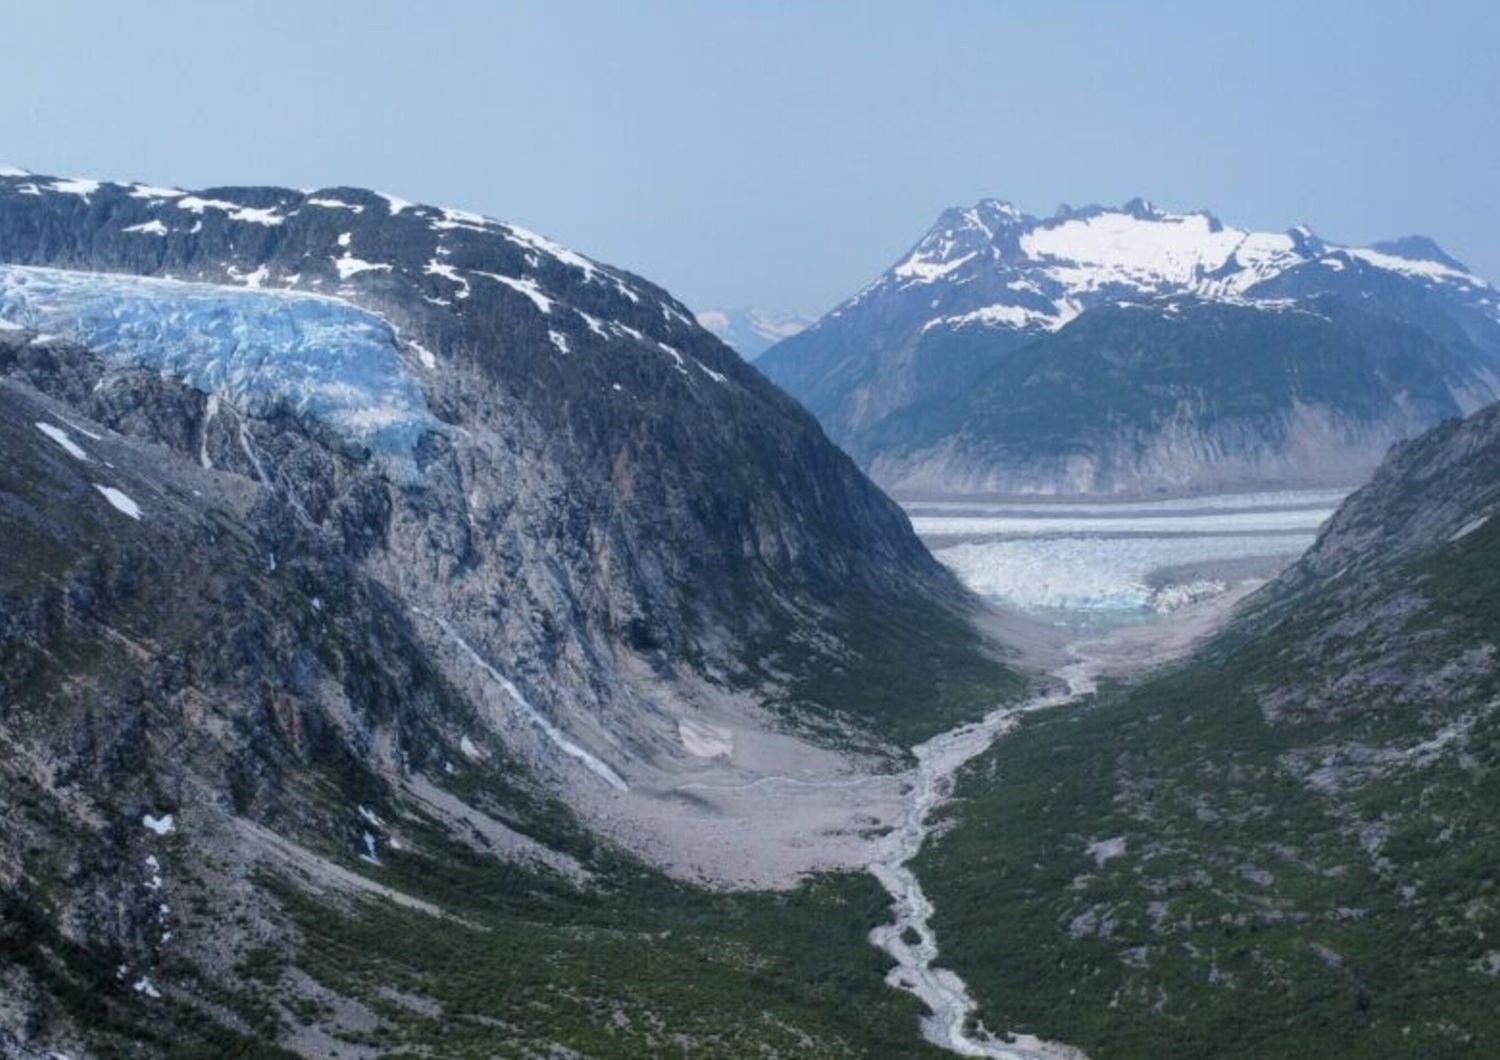 Avalanche Canyon con il ghiacciaio Gilkey sullo sfondo, che mostra una valle glaciale ripidamente incisa